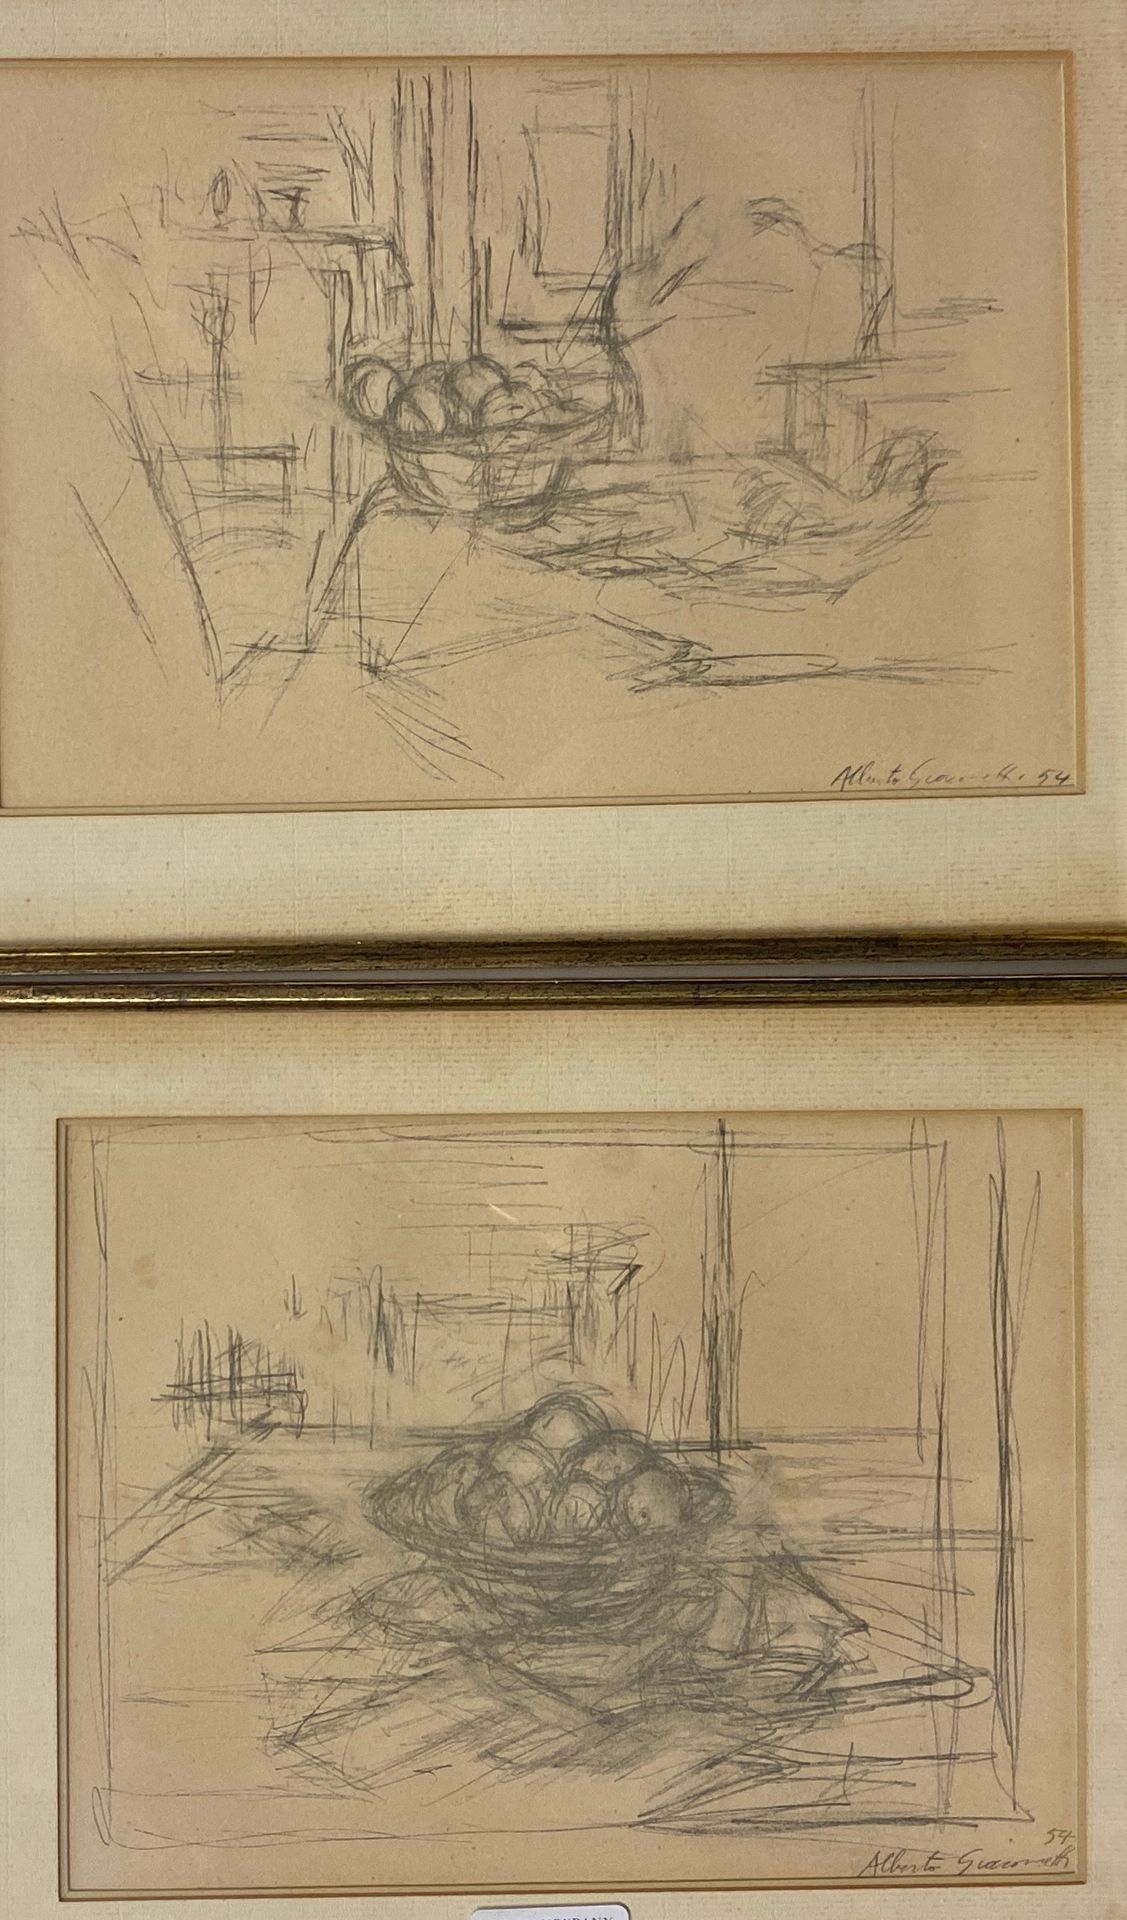 Null 阿尔贝托-贾科梅蒂(1901-1966)之后

静物与水果 54

两幅石版画的套画

右下方有签名和日期

17 x 26和14 x 18.5厘米